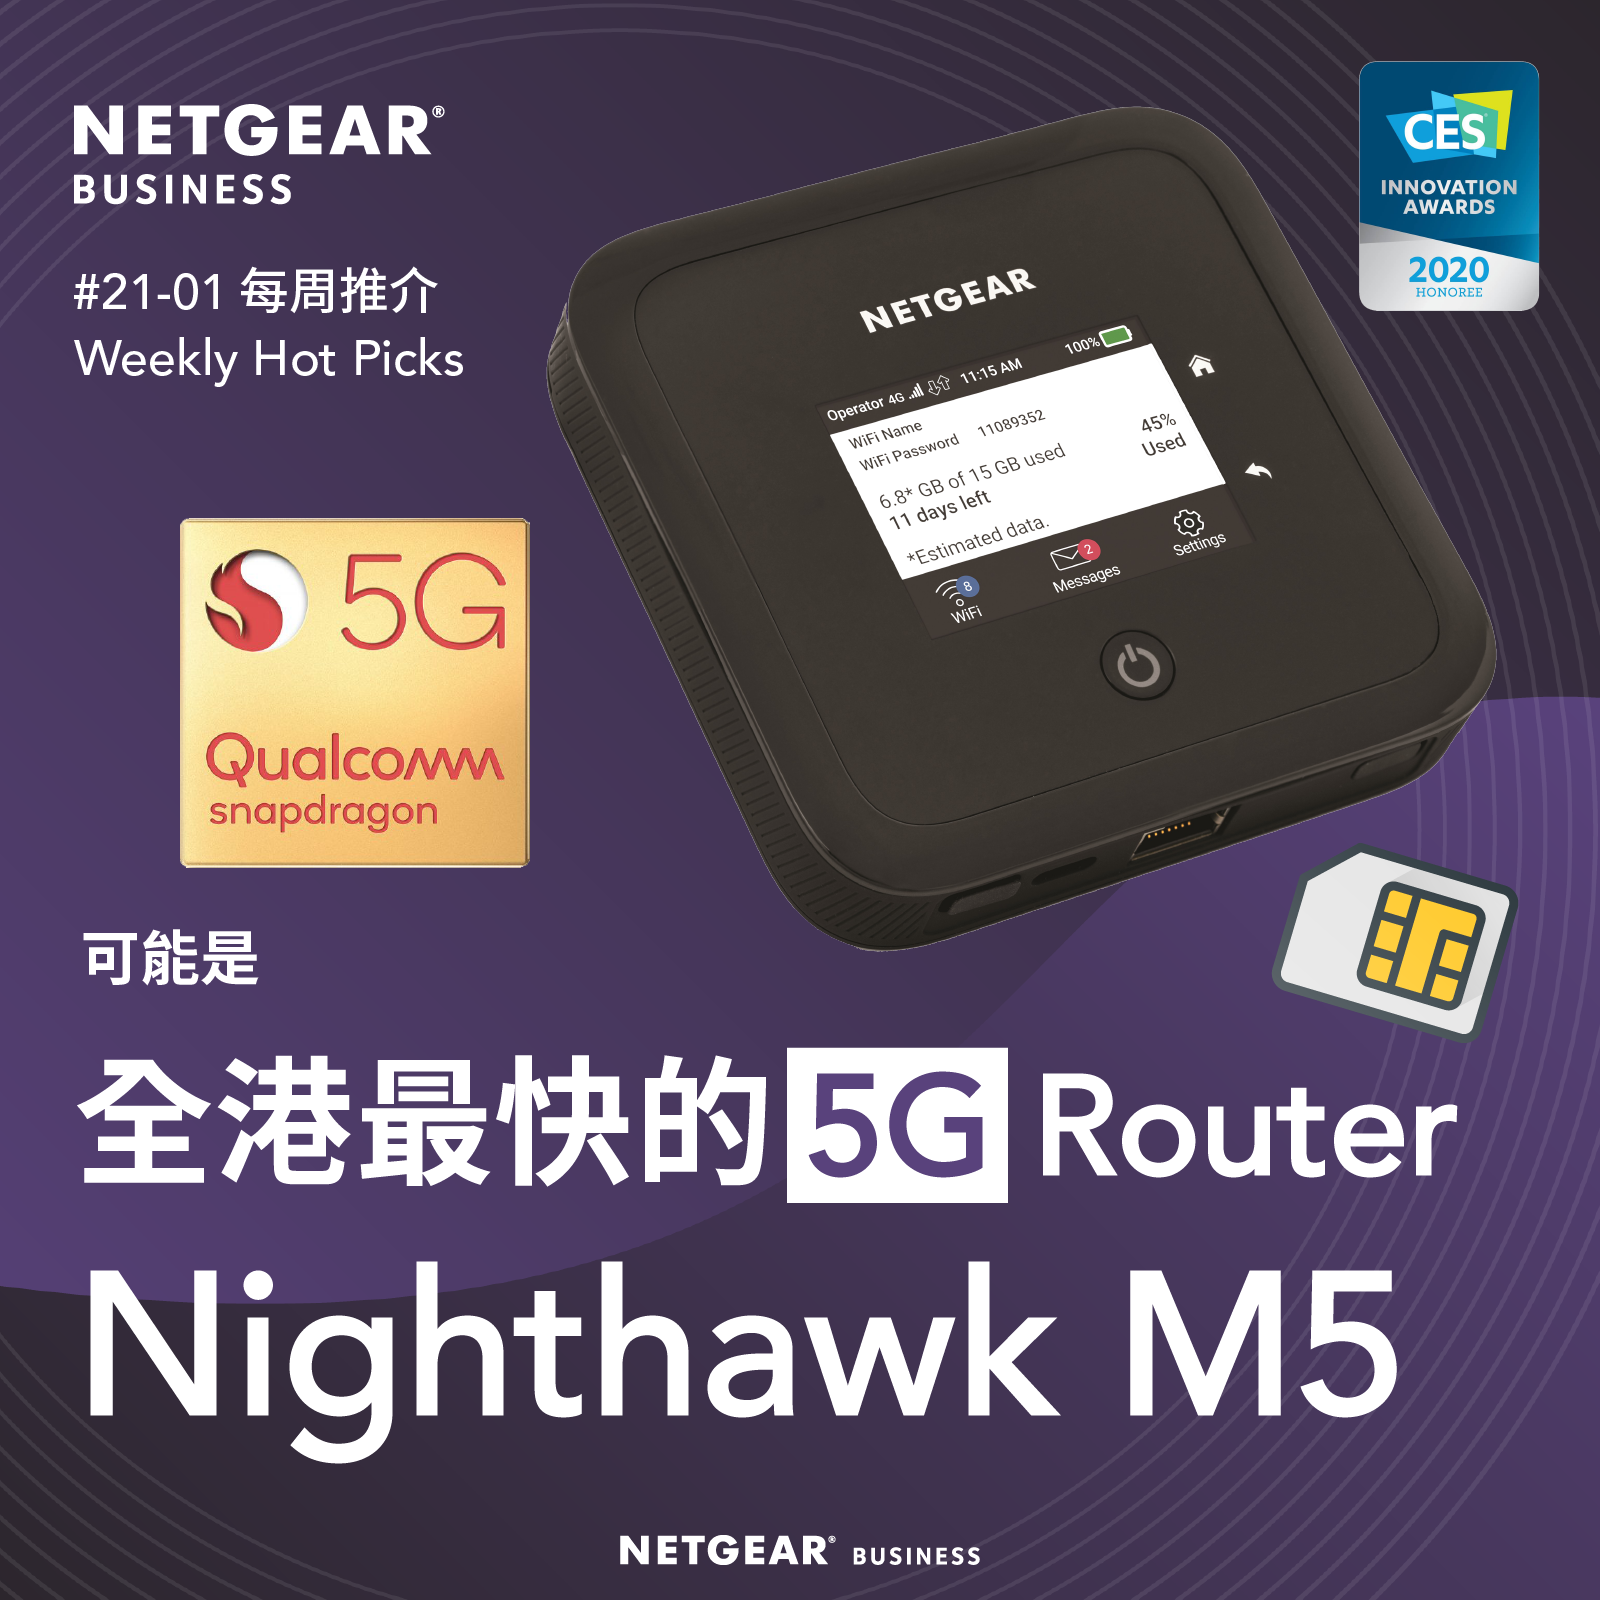 <b>Issue 21-01</b><br>可能是全港最快的 5G Router - Nighthawk M5